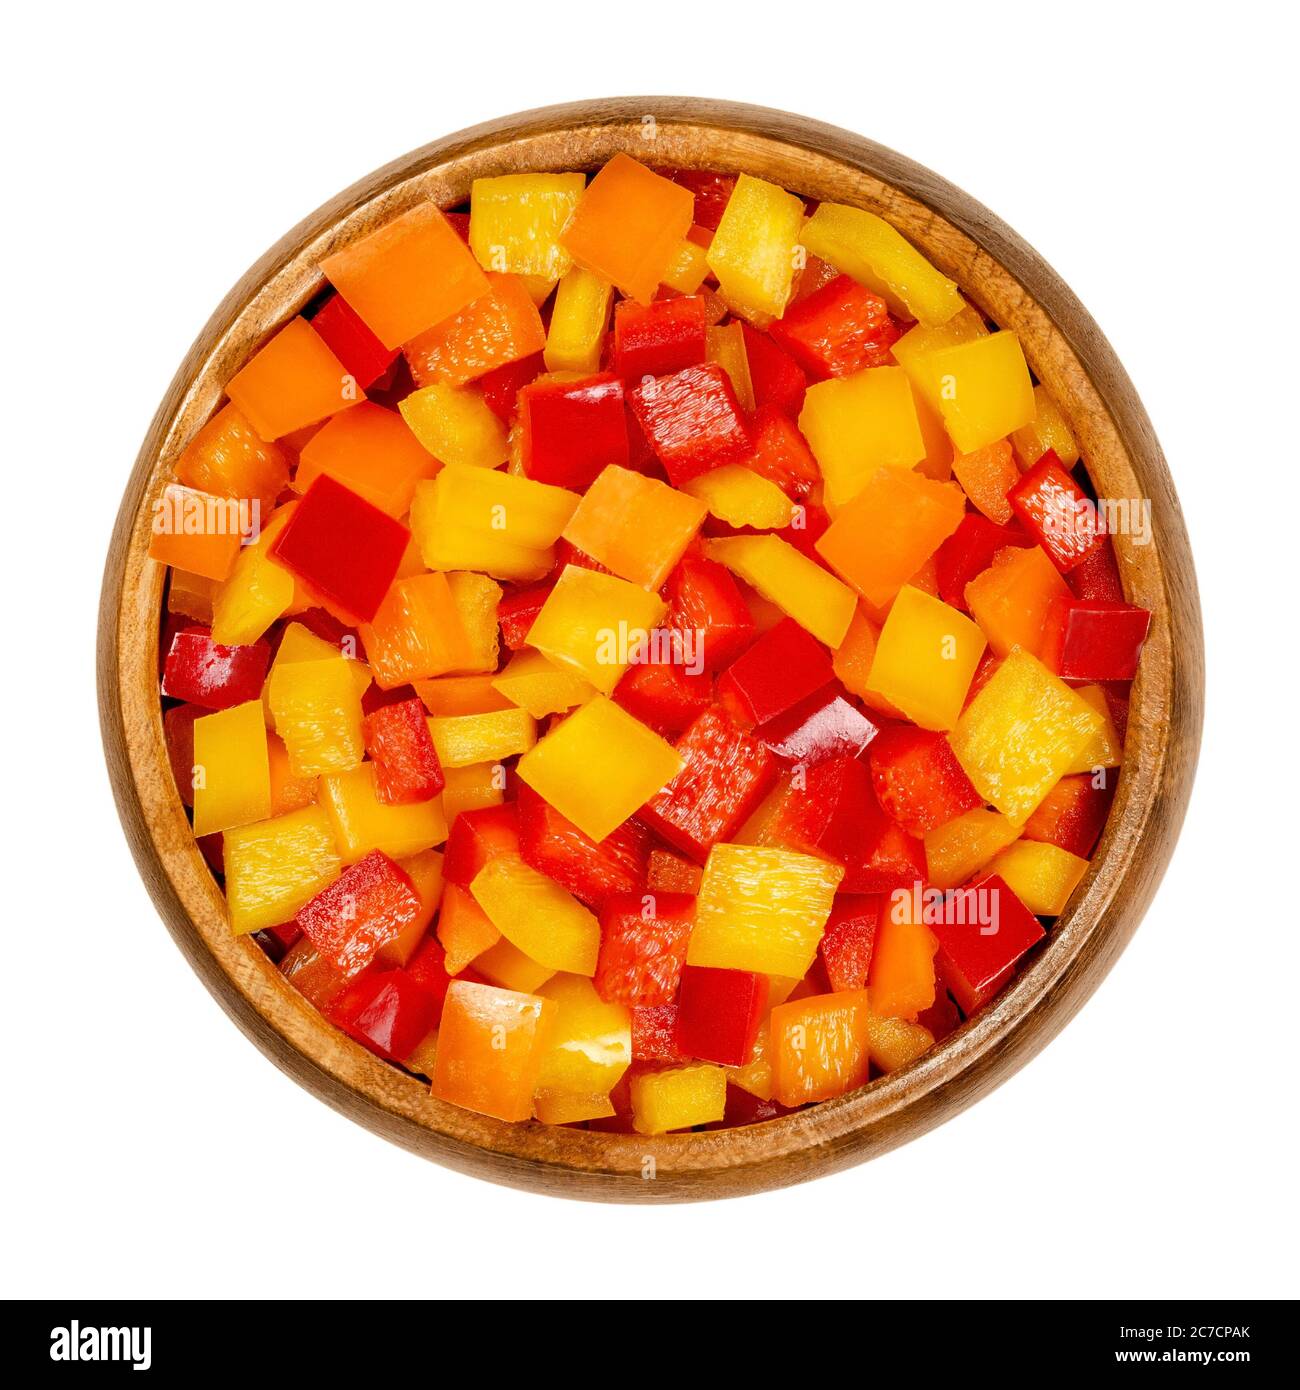 Peperoni a cubetti in una ciotola di legno. Peperone dolce, capsicum o anche chiamato paprika, tagliato in patatine colorate. Frutta fresca gialla, arancione e rossa. Foto Stock